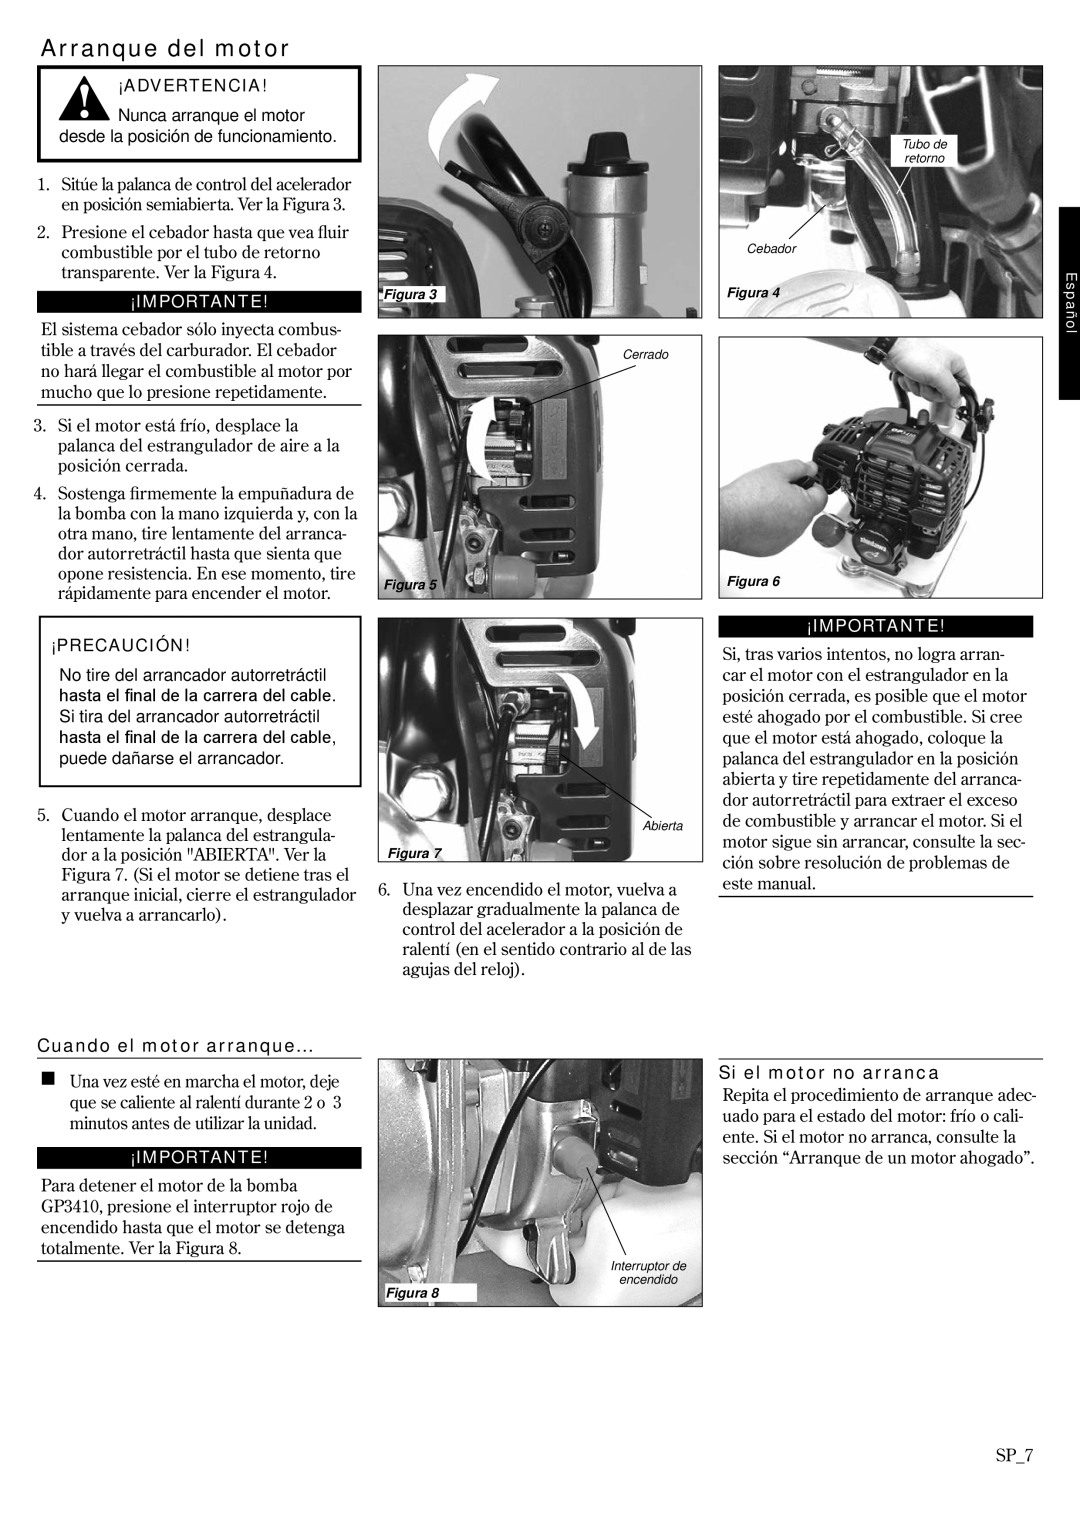 Shindaiwa GP3410, 6850-9430 manual Arranque del motor, ¡Advertencia, ¡Importante, ¡Precaución, Cuando el motor arranque 